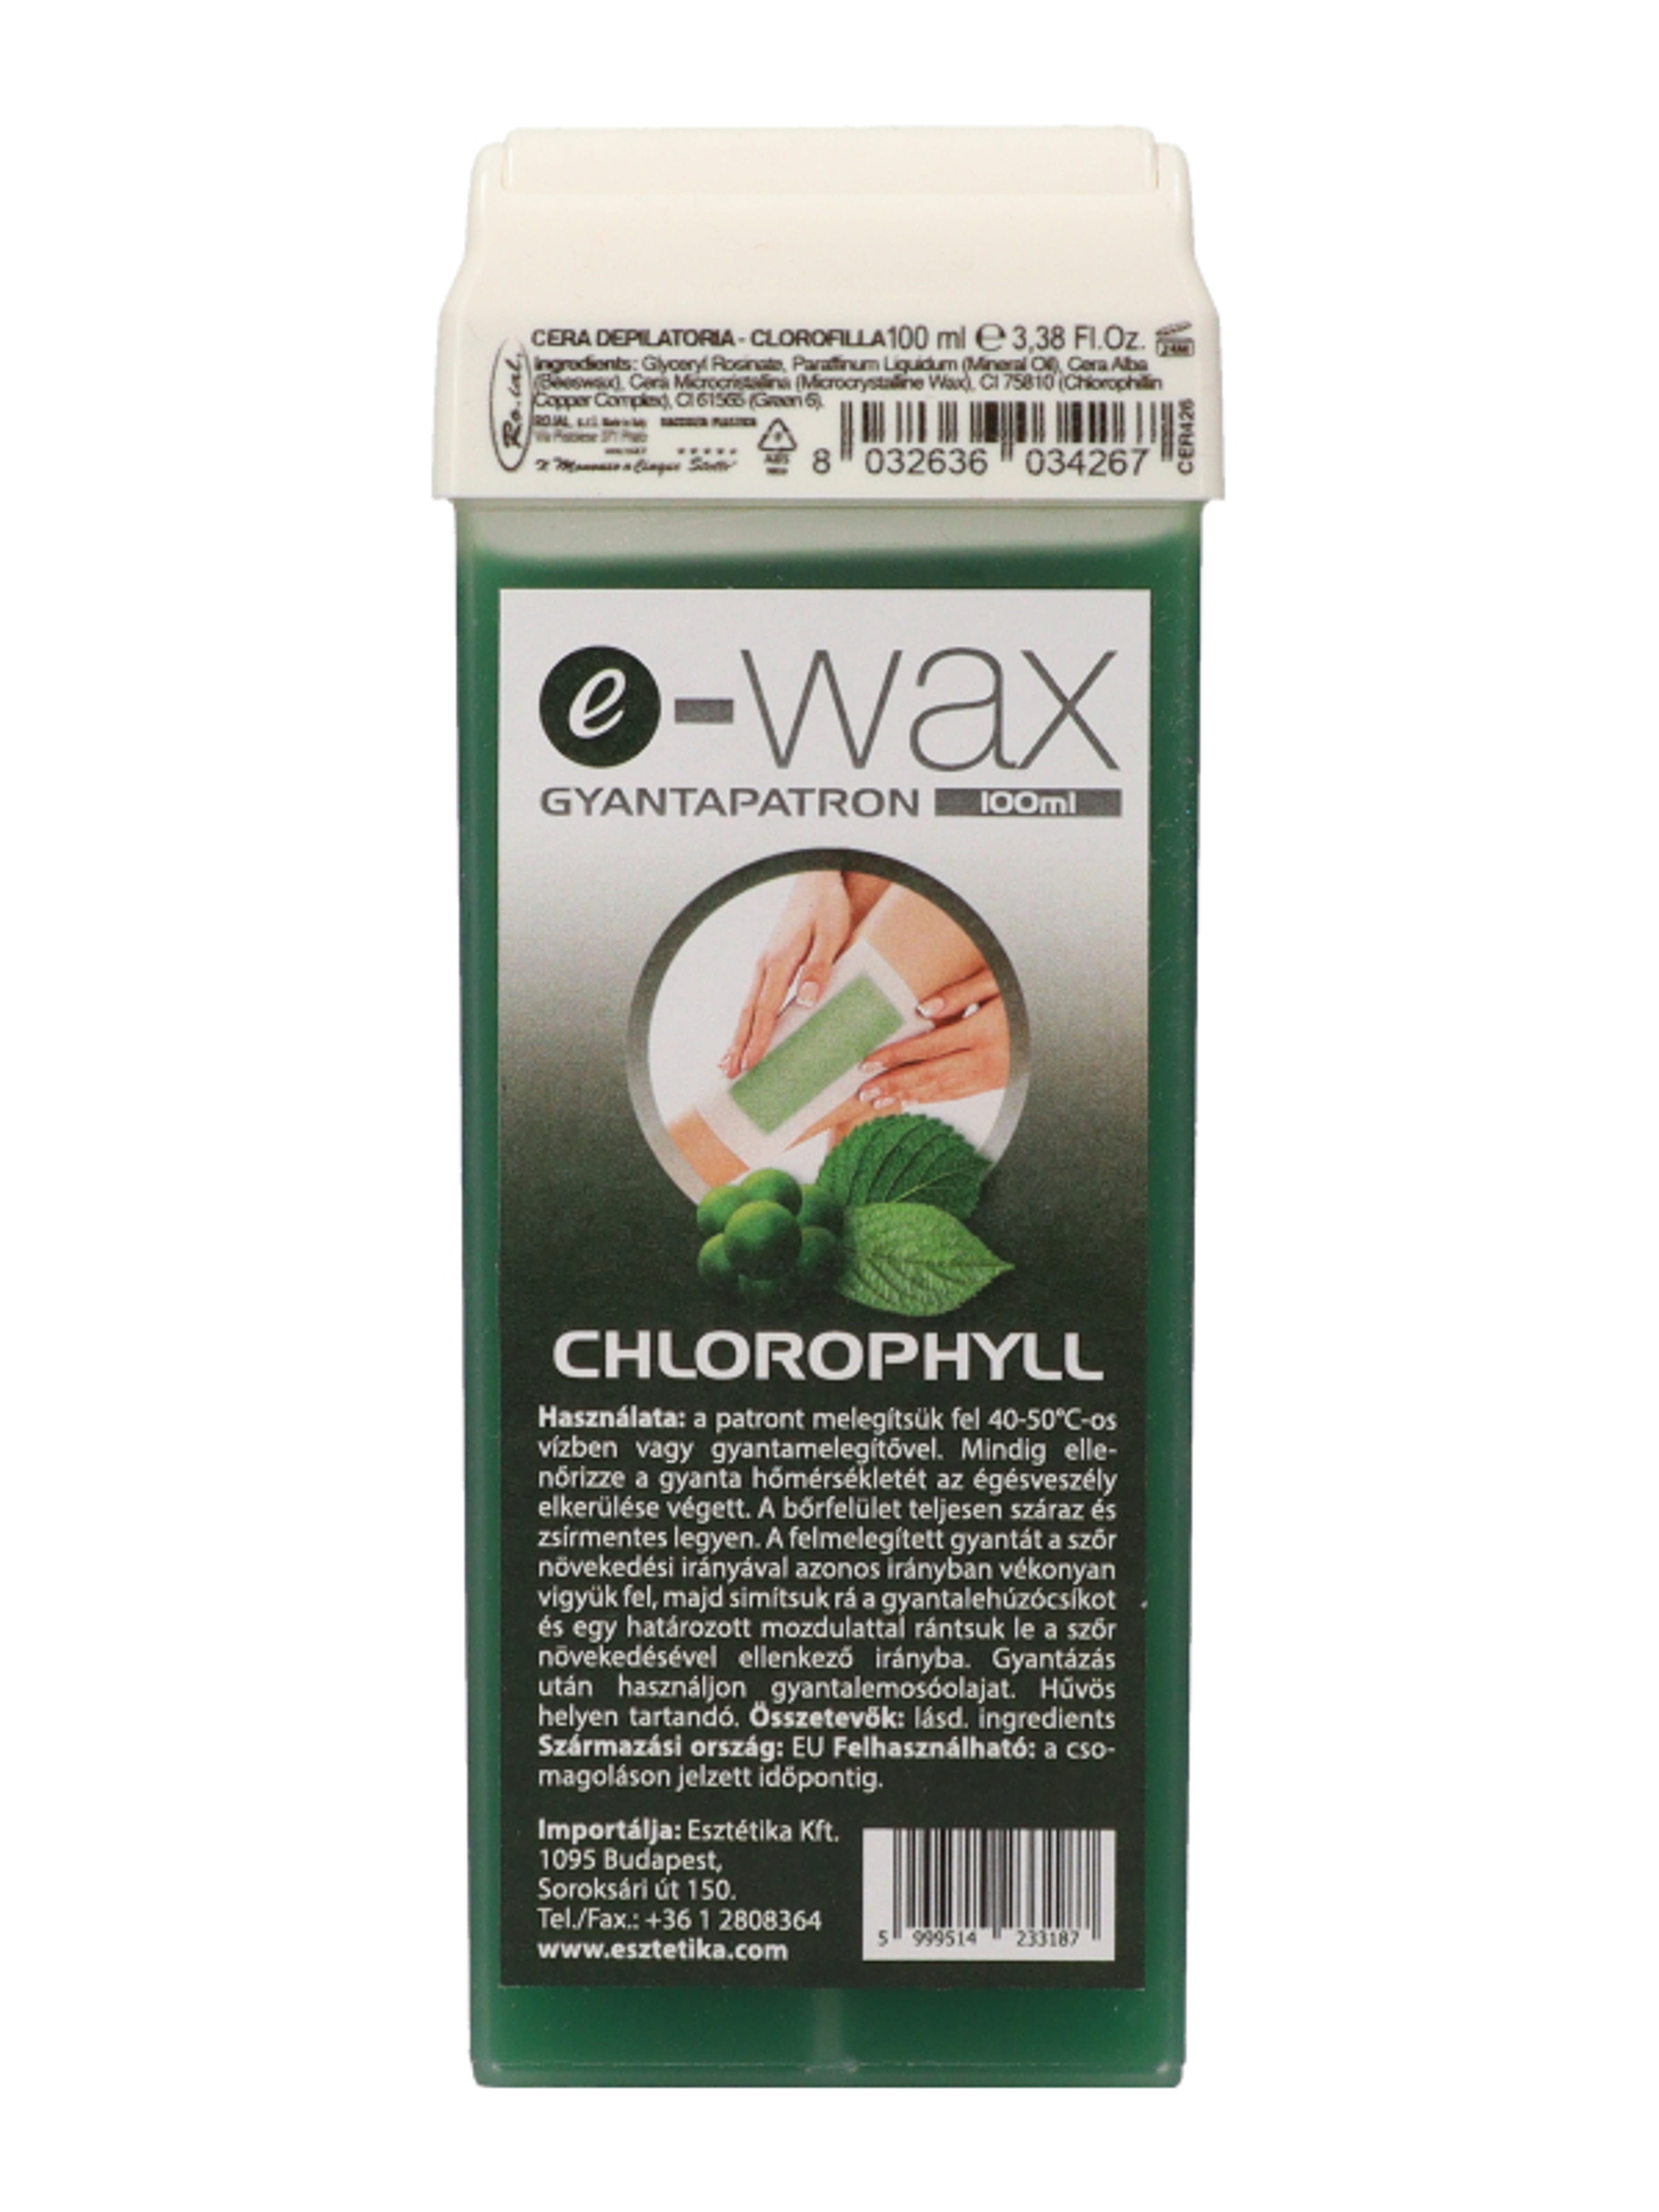 E-Wax gyantapatron chlorophyll - 100 ml-2